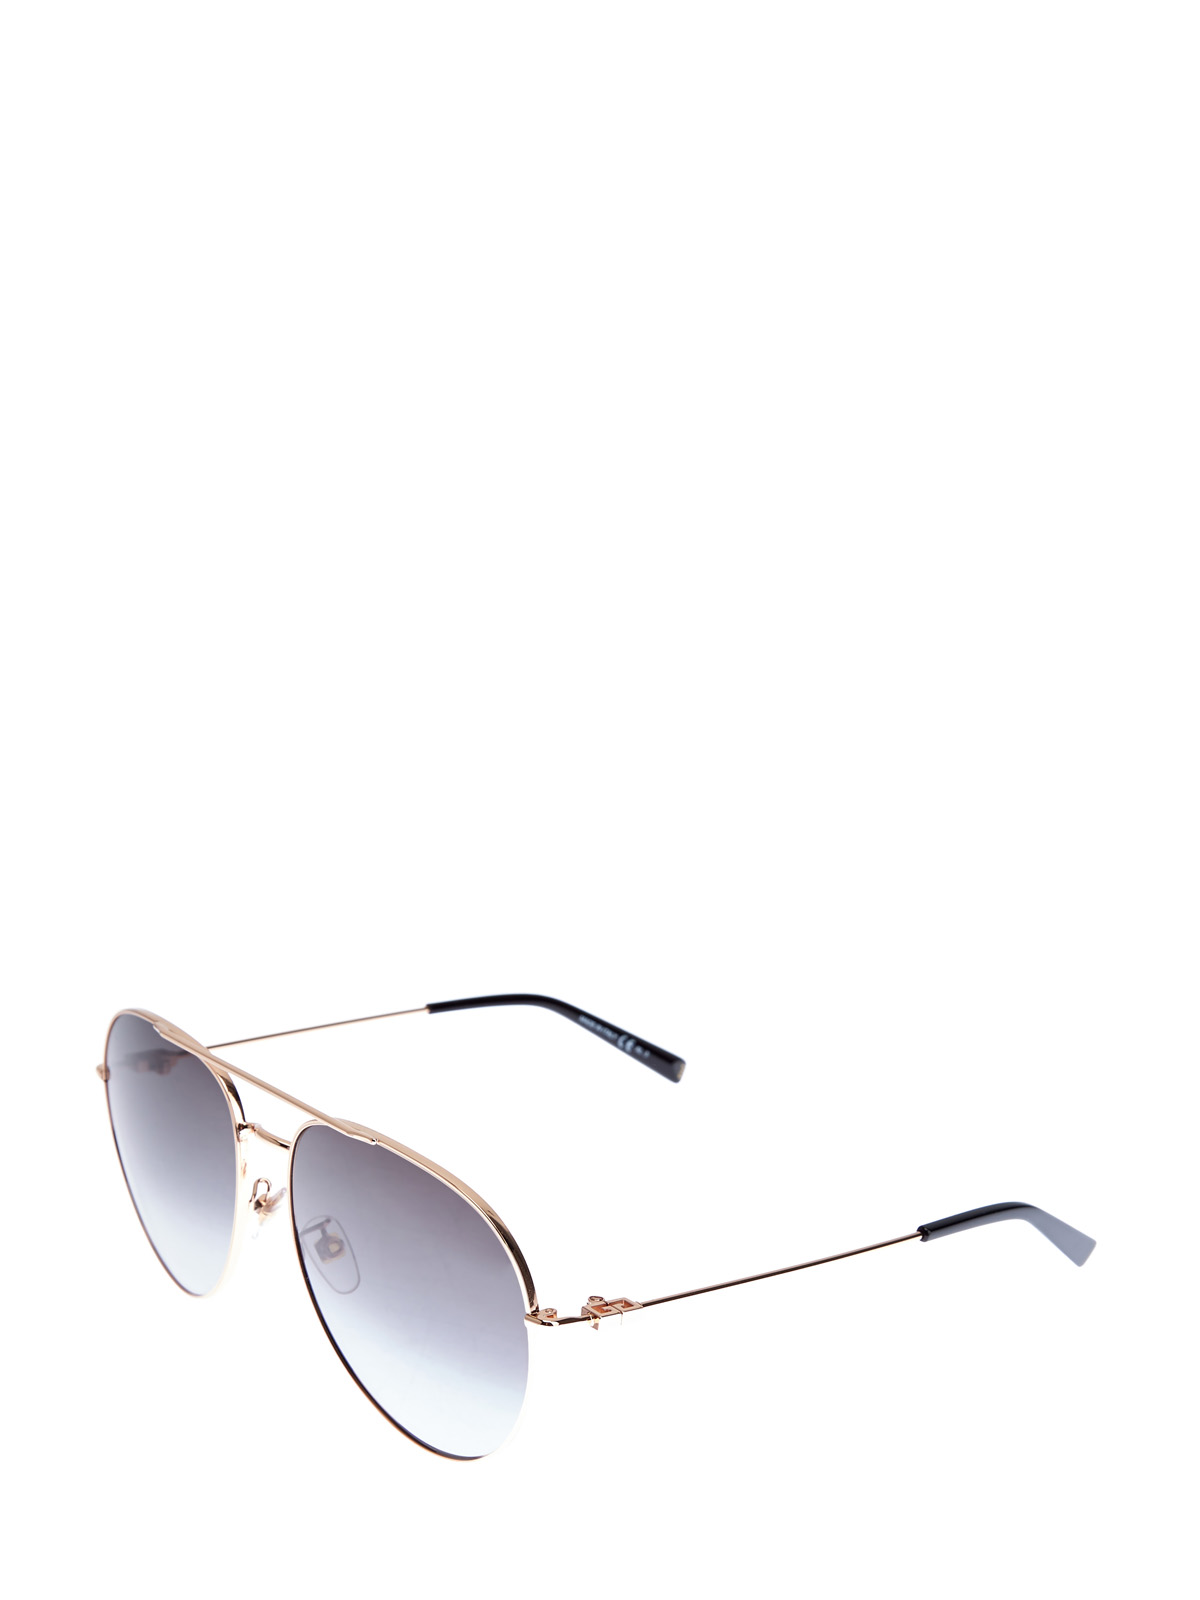 Очки в тонкой металлической оправе «авиатор» GIVENCHY (sunglasses), цвет черный, размер S;M;L - фото 2